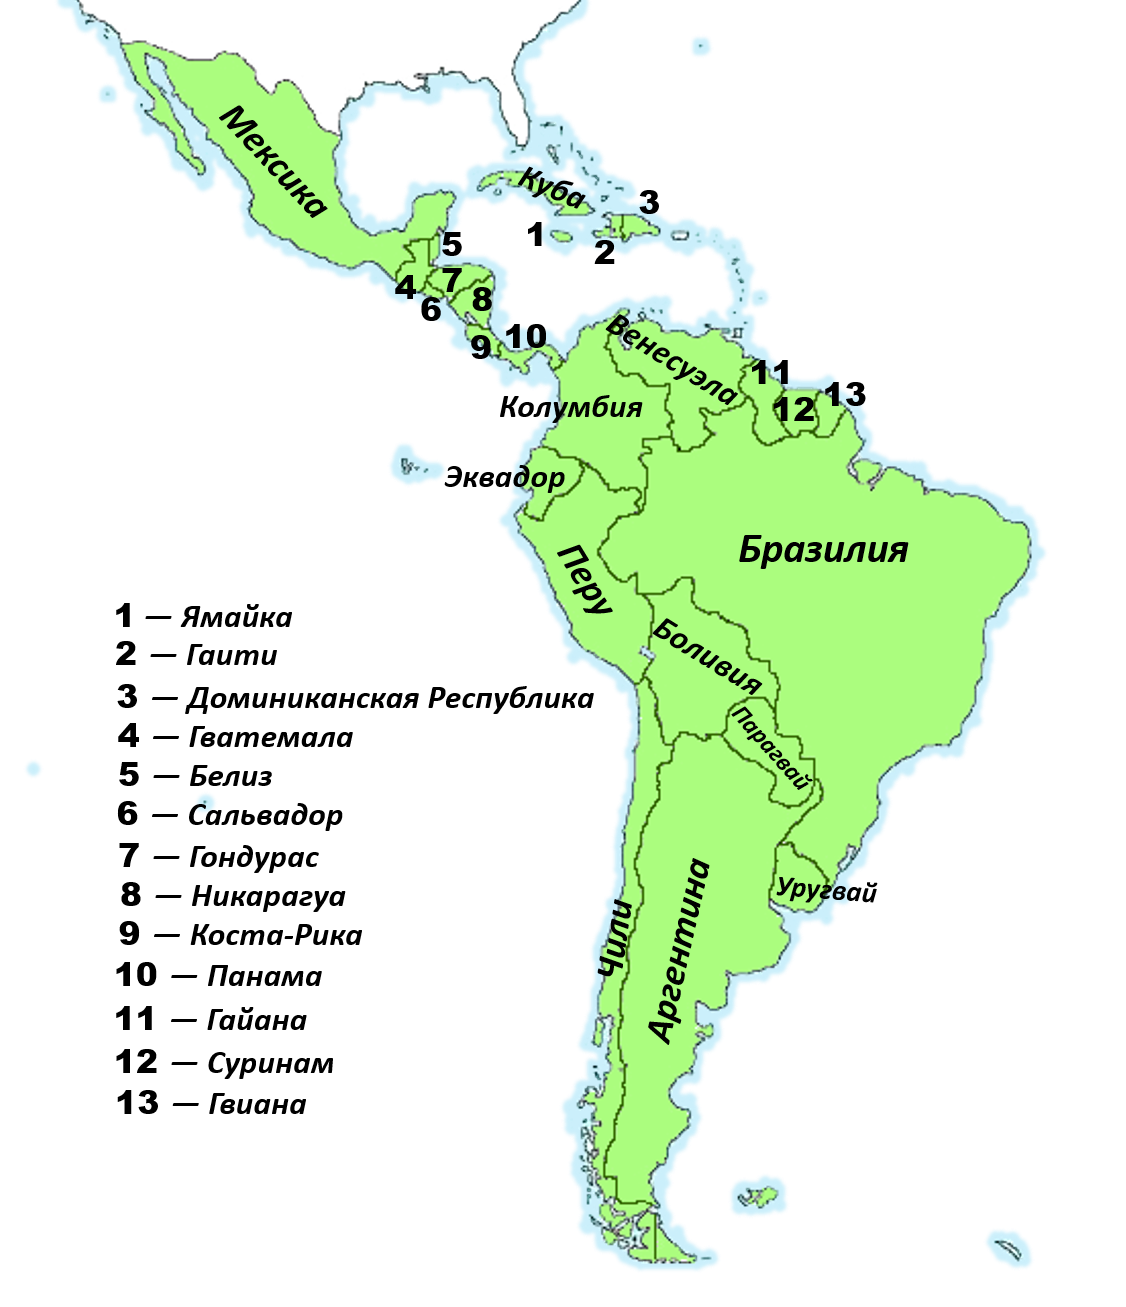 Почему южная америка называется южной америкой. Политическая карта Латинской Америки со странами. Латинская Америка карта со странами и столицами на русском. Контурная карта государств Латинской Америки. Карта Латинской Америки со странами.